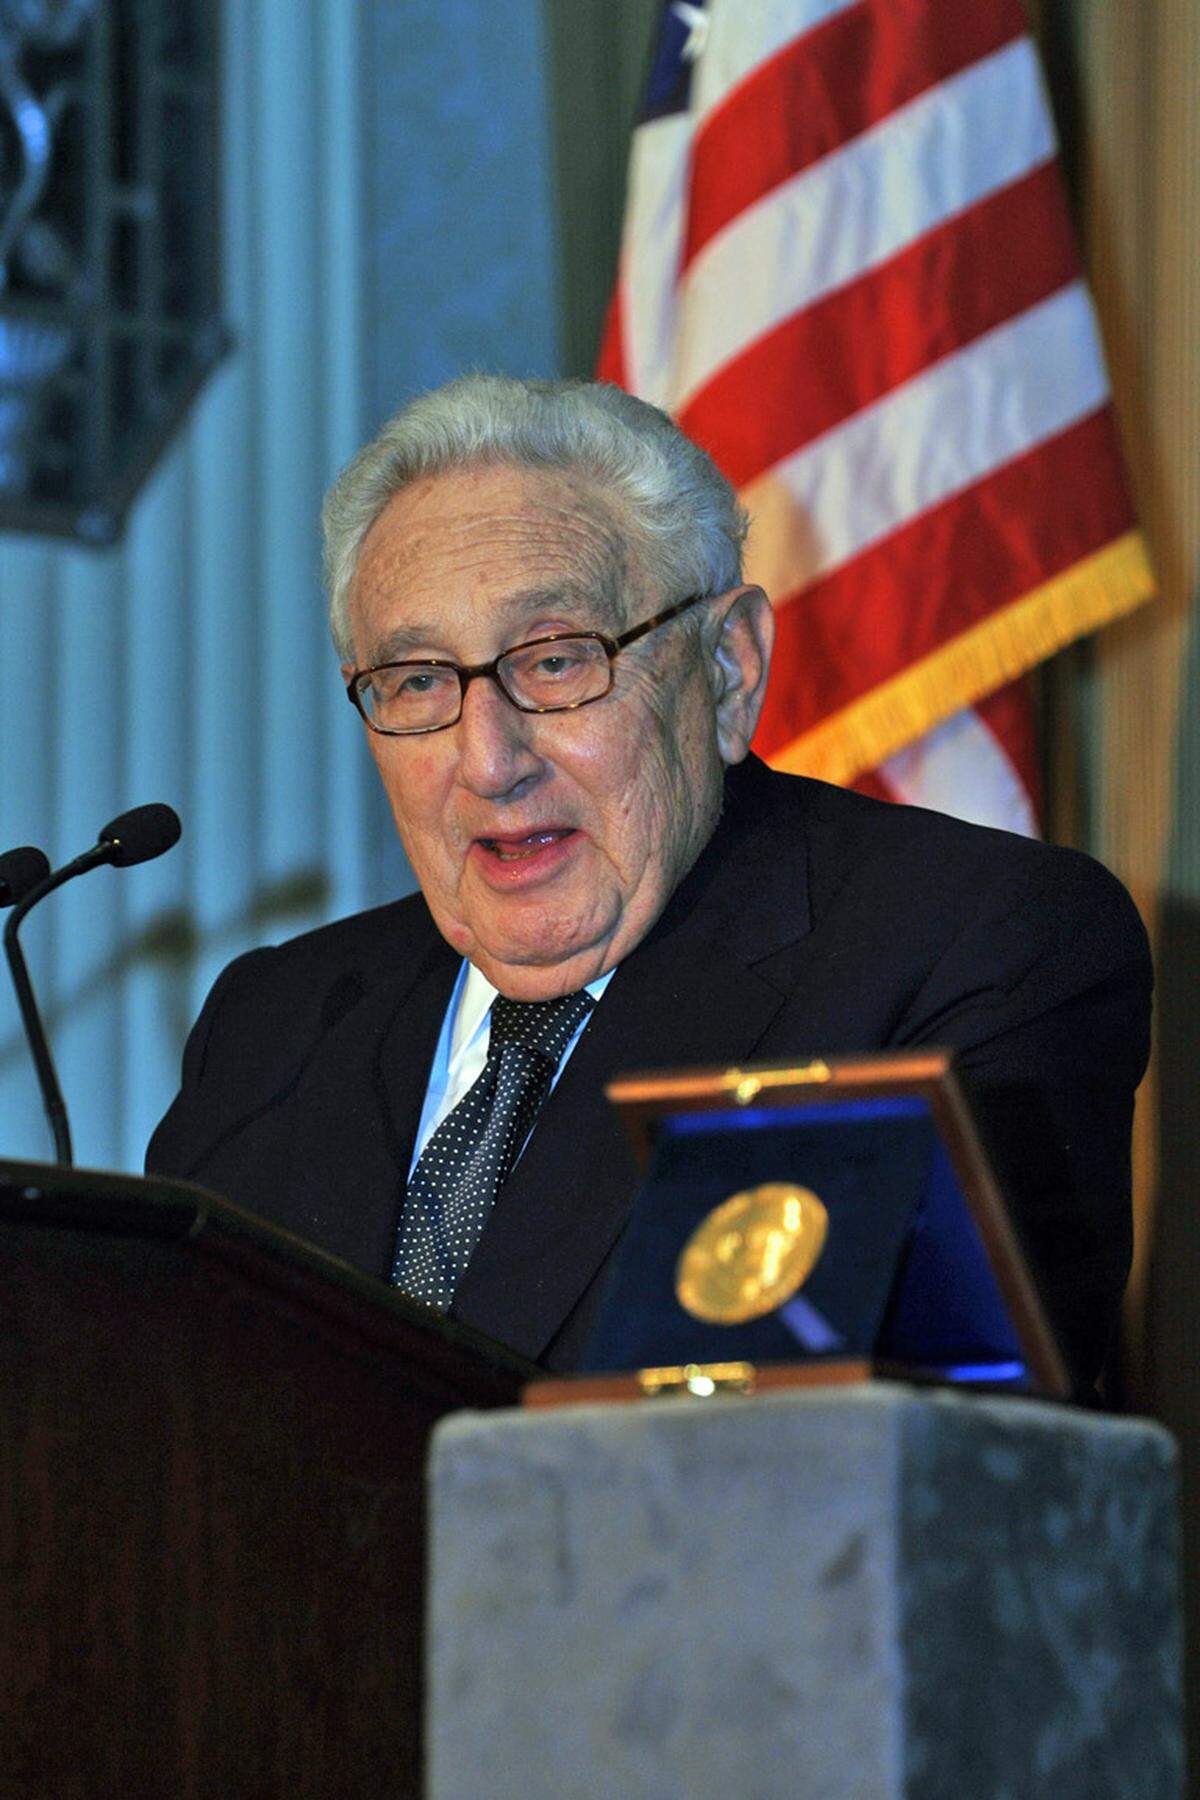 Kissingers Regierungskarriere endete noch im selben Jahr mit der Wahlniederlage Gerald Fords und dem Beginn der Präsidentschaft des Demokraten Jimmy Carter.